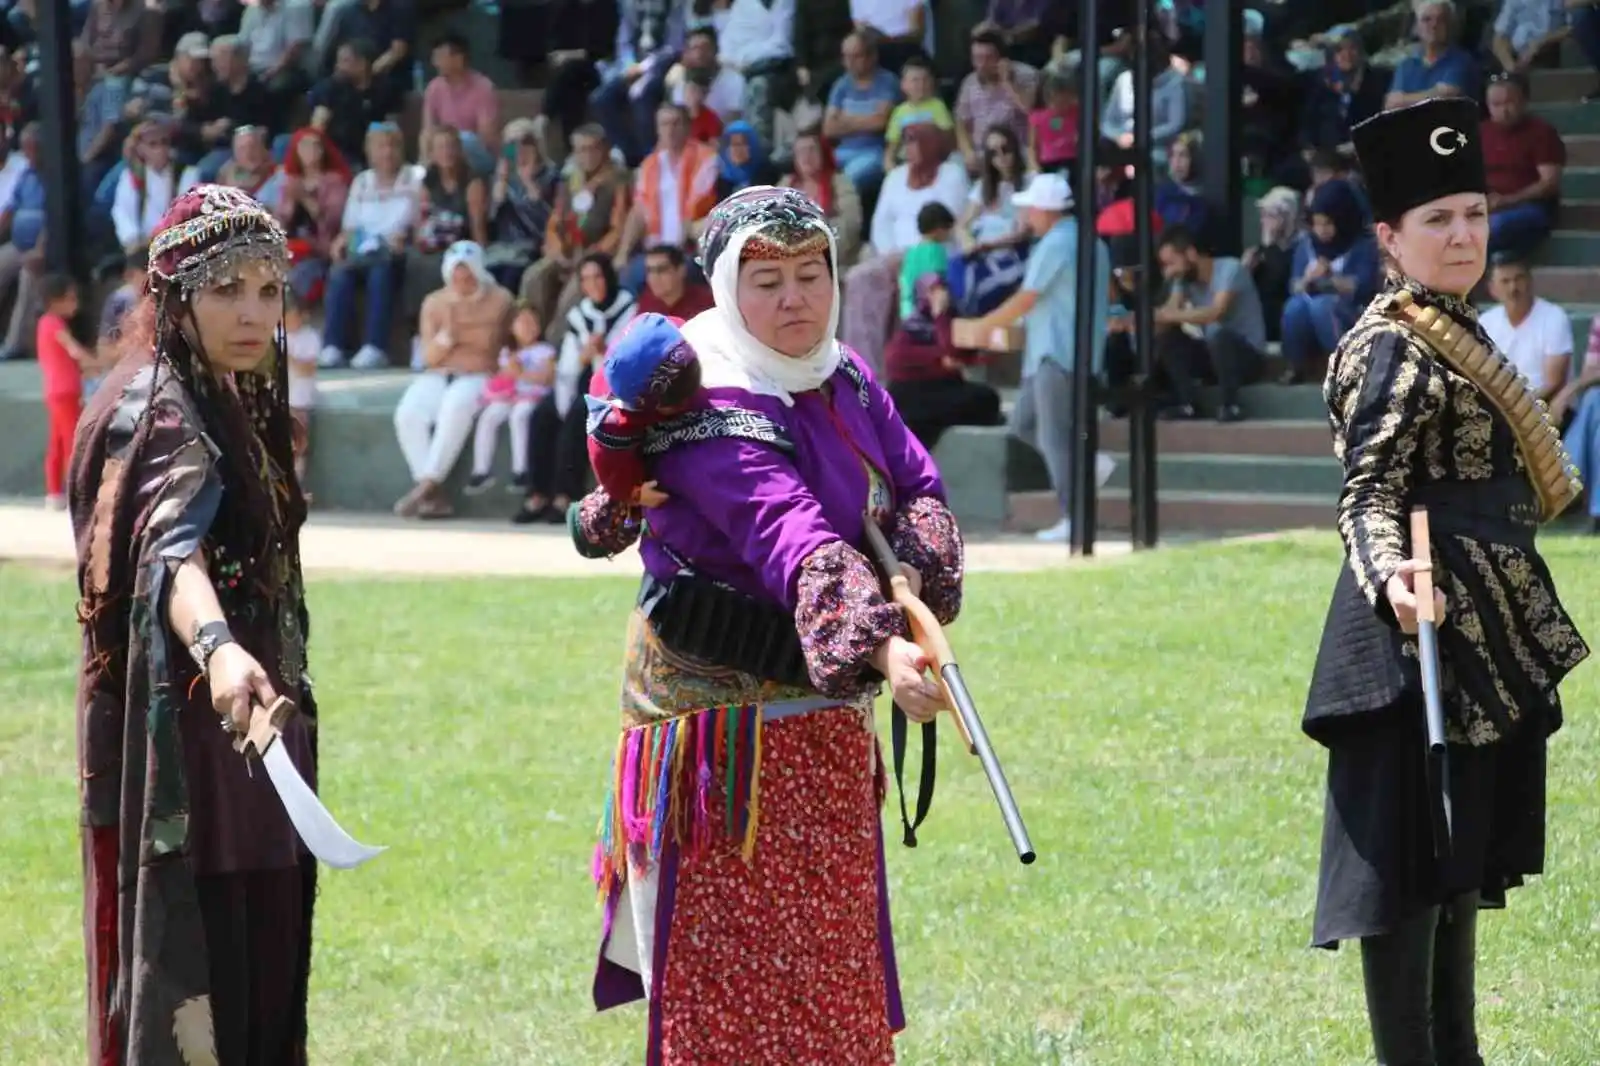 Eskişehir Anadolu Bacıları oyun ve gösterileri ile ülke çapında ilgi görüyor
